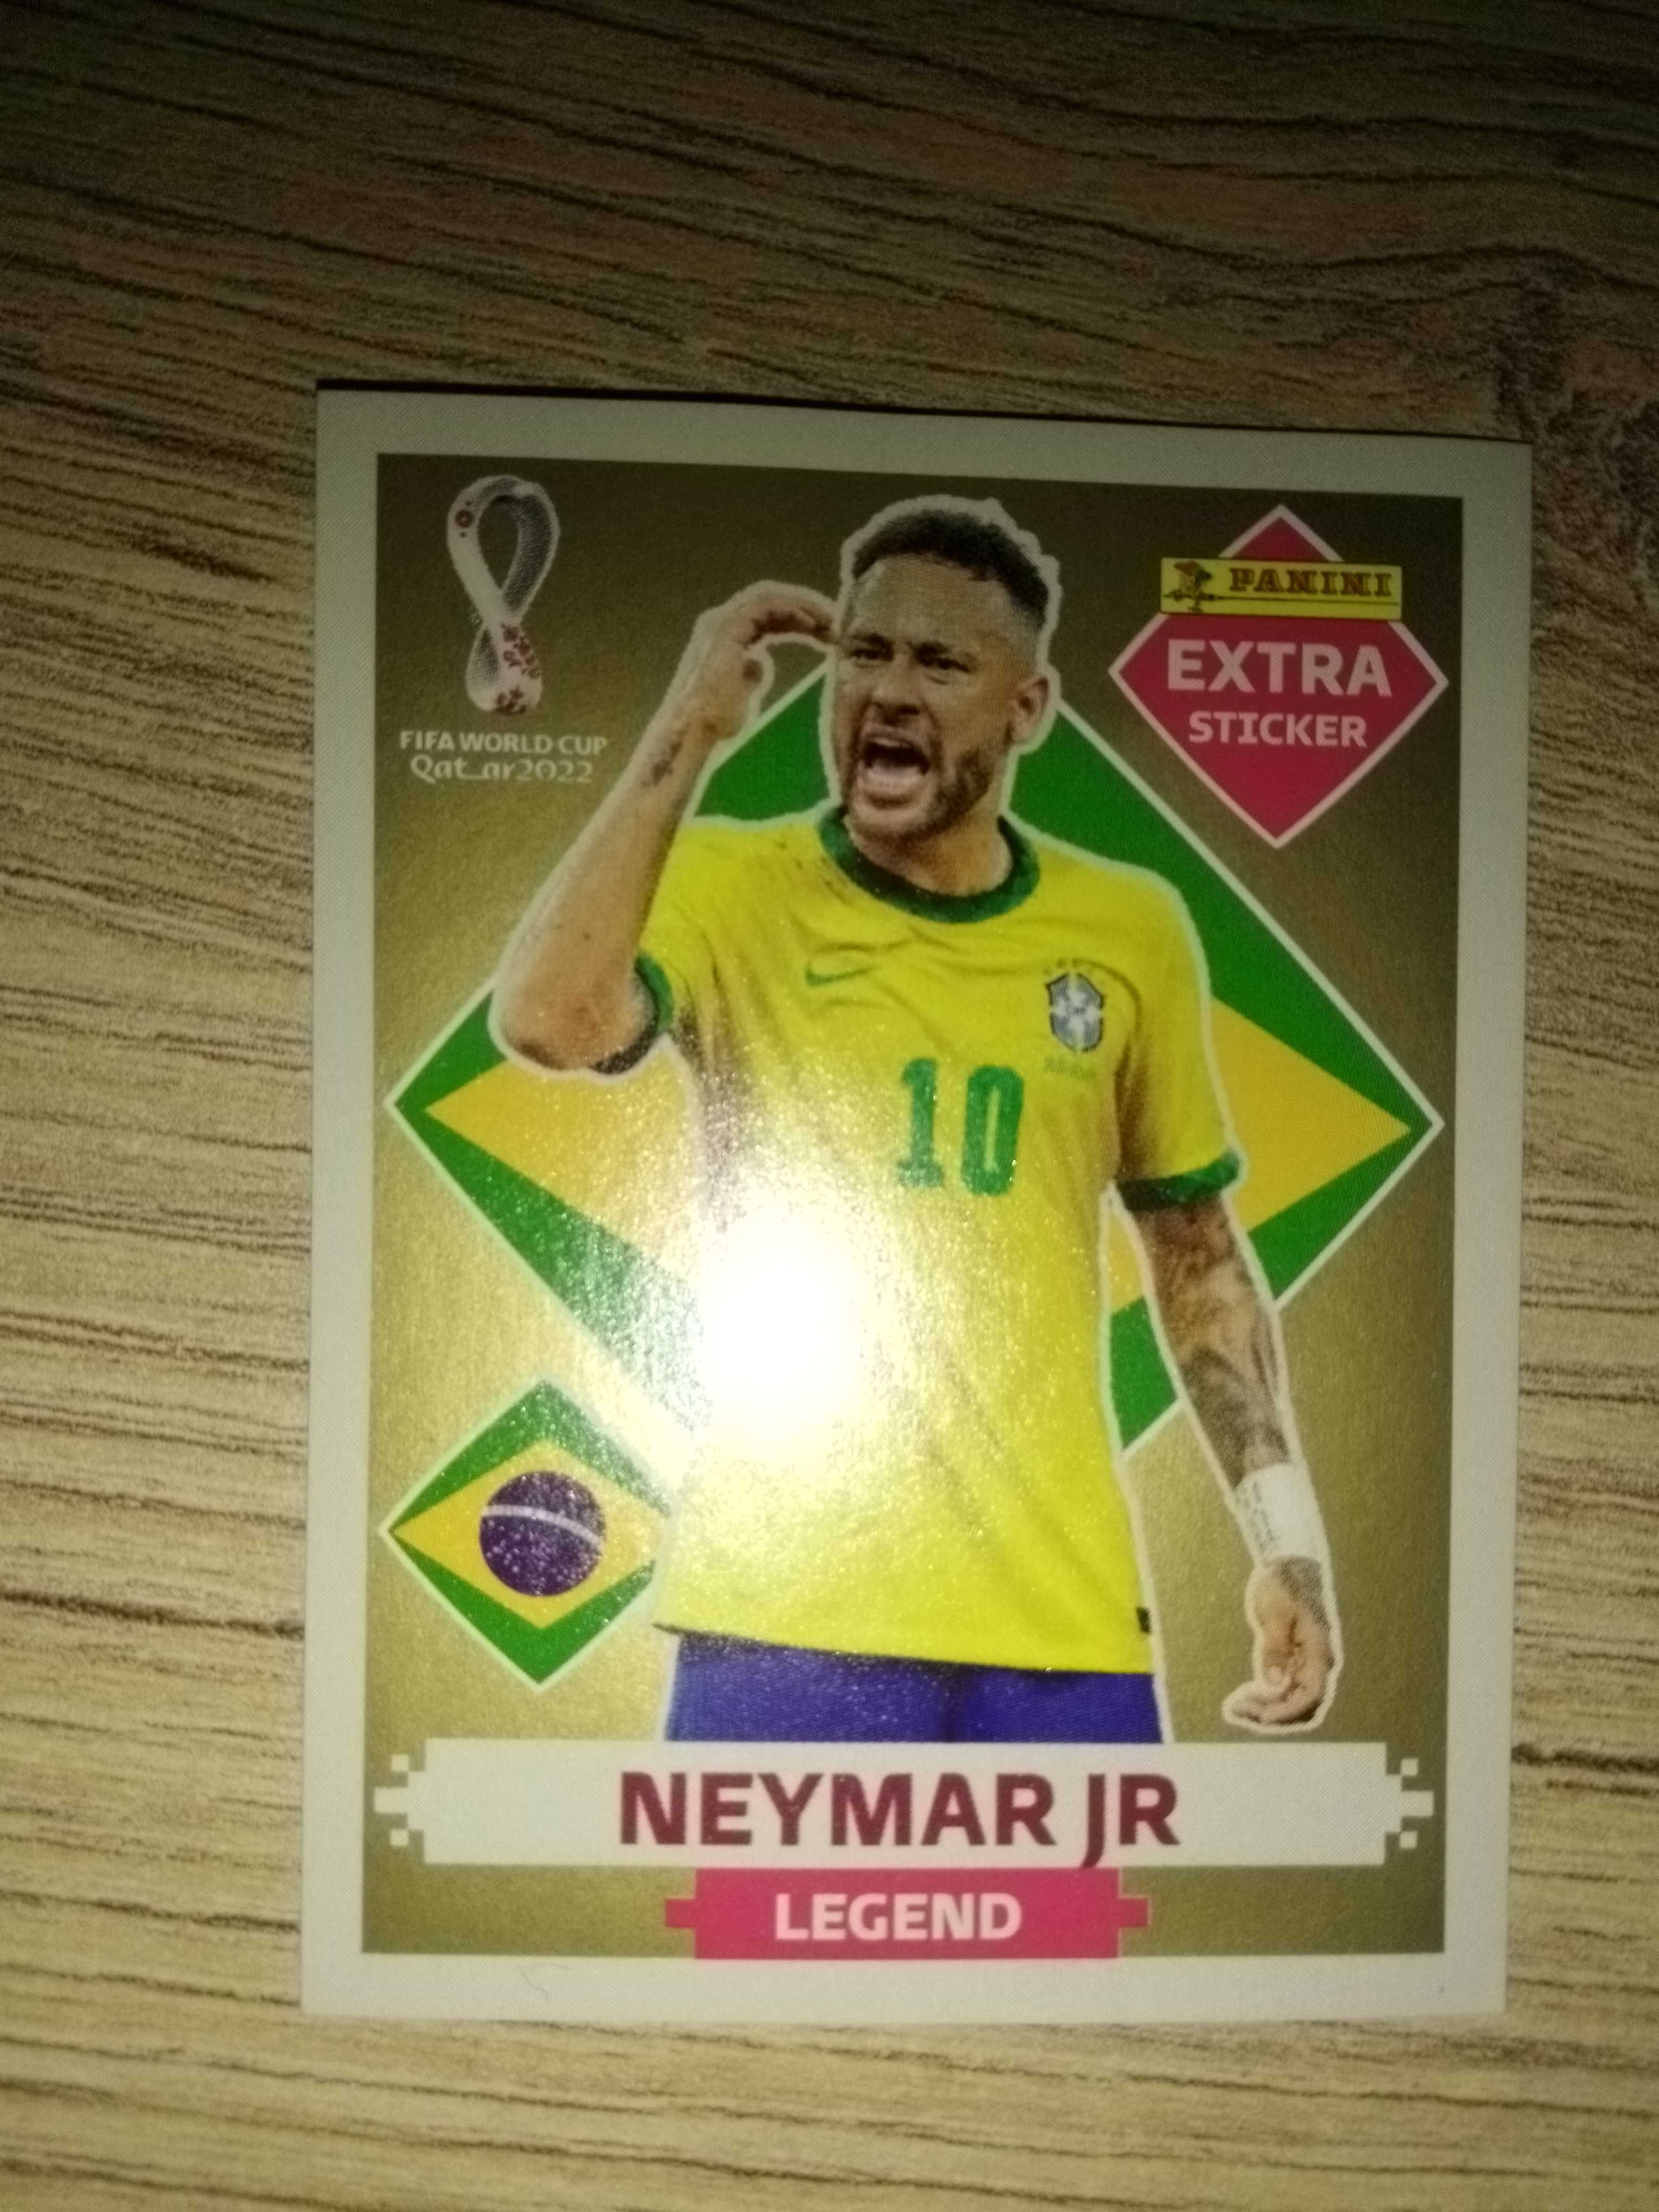 Neymar Legend Gold - Cadernetas e Cromos - OLX Portugal